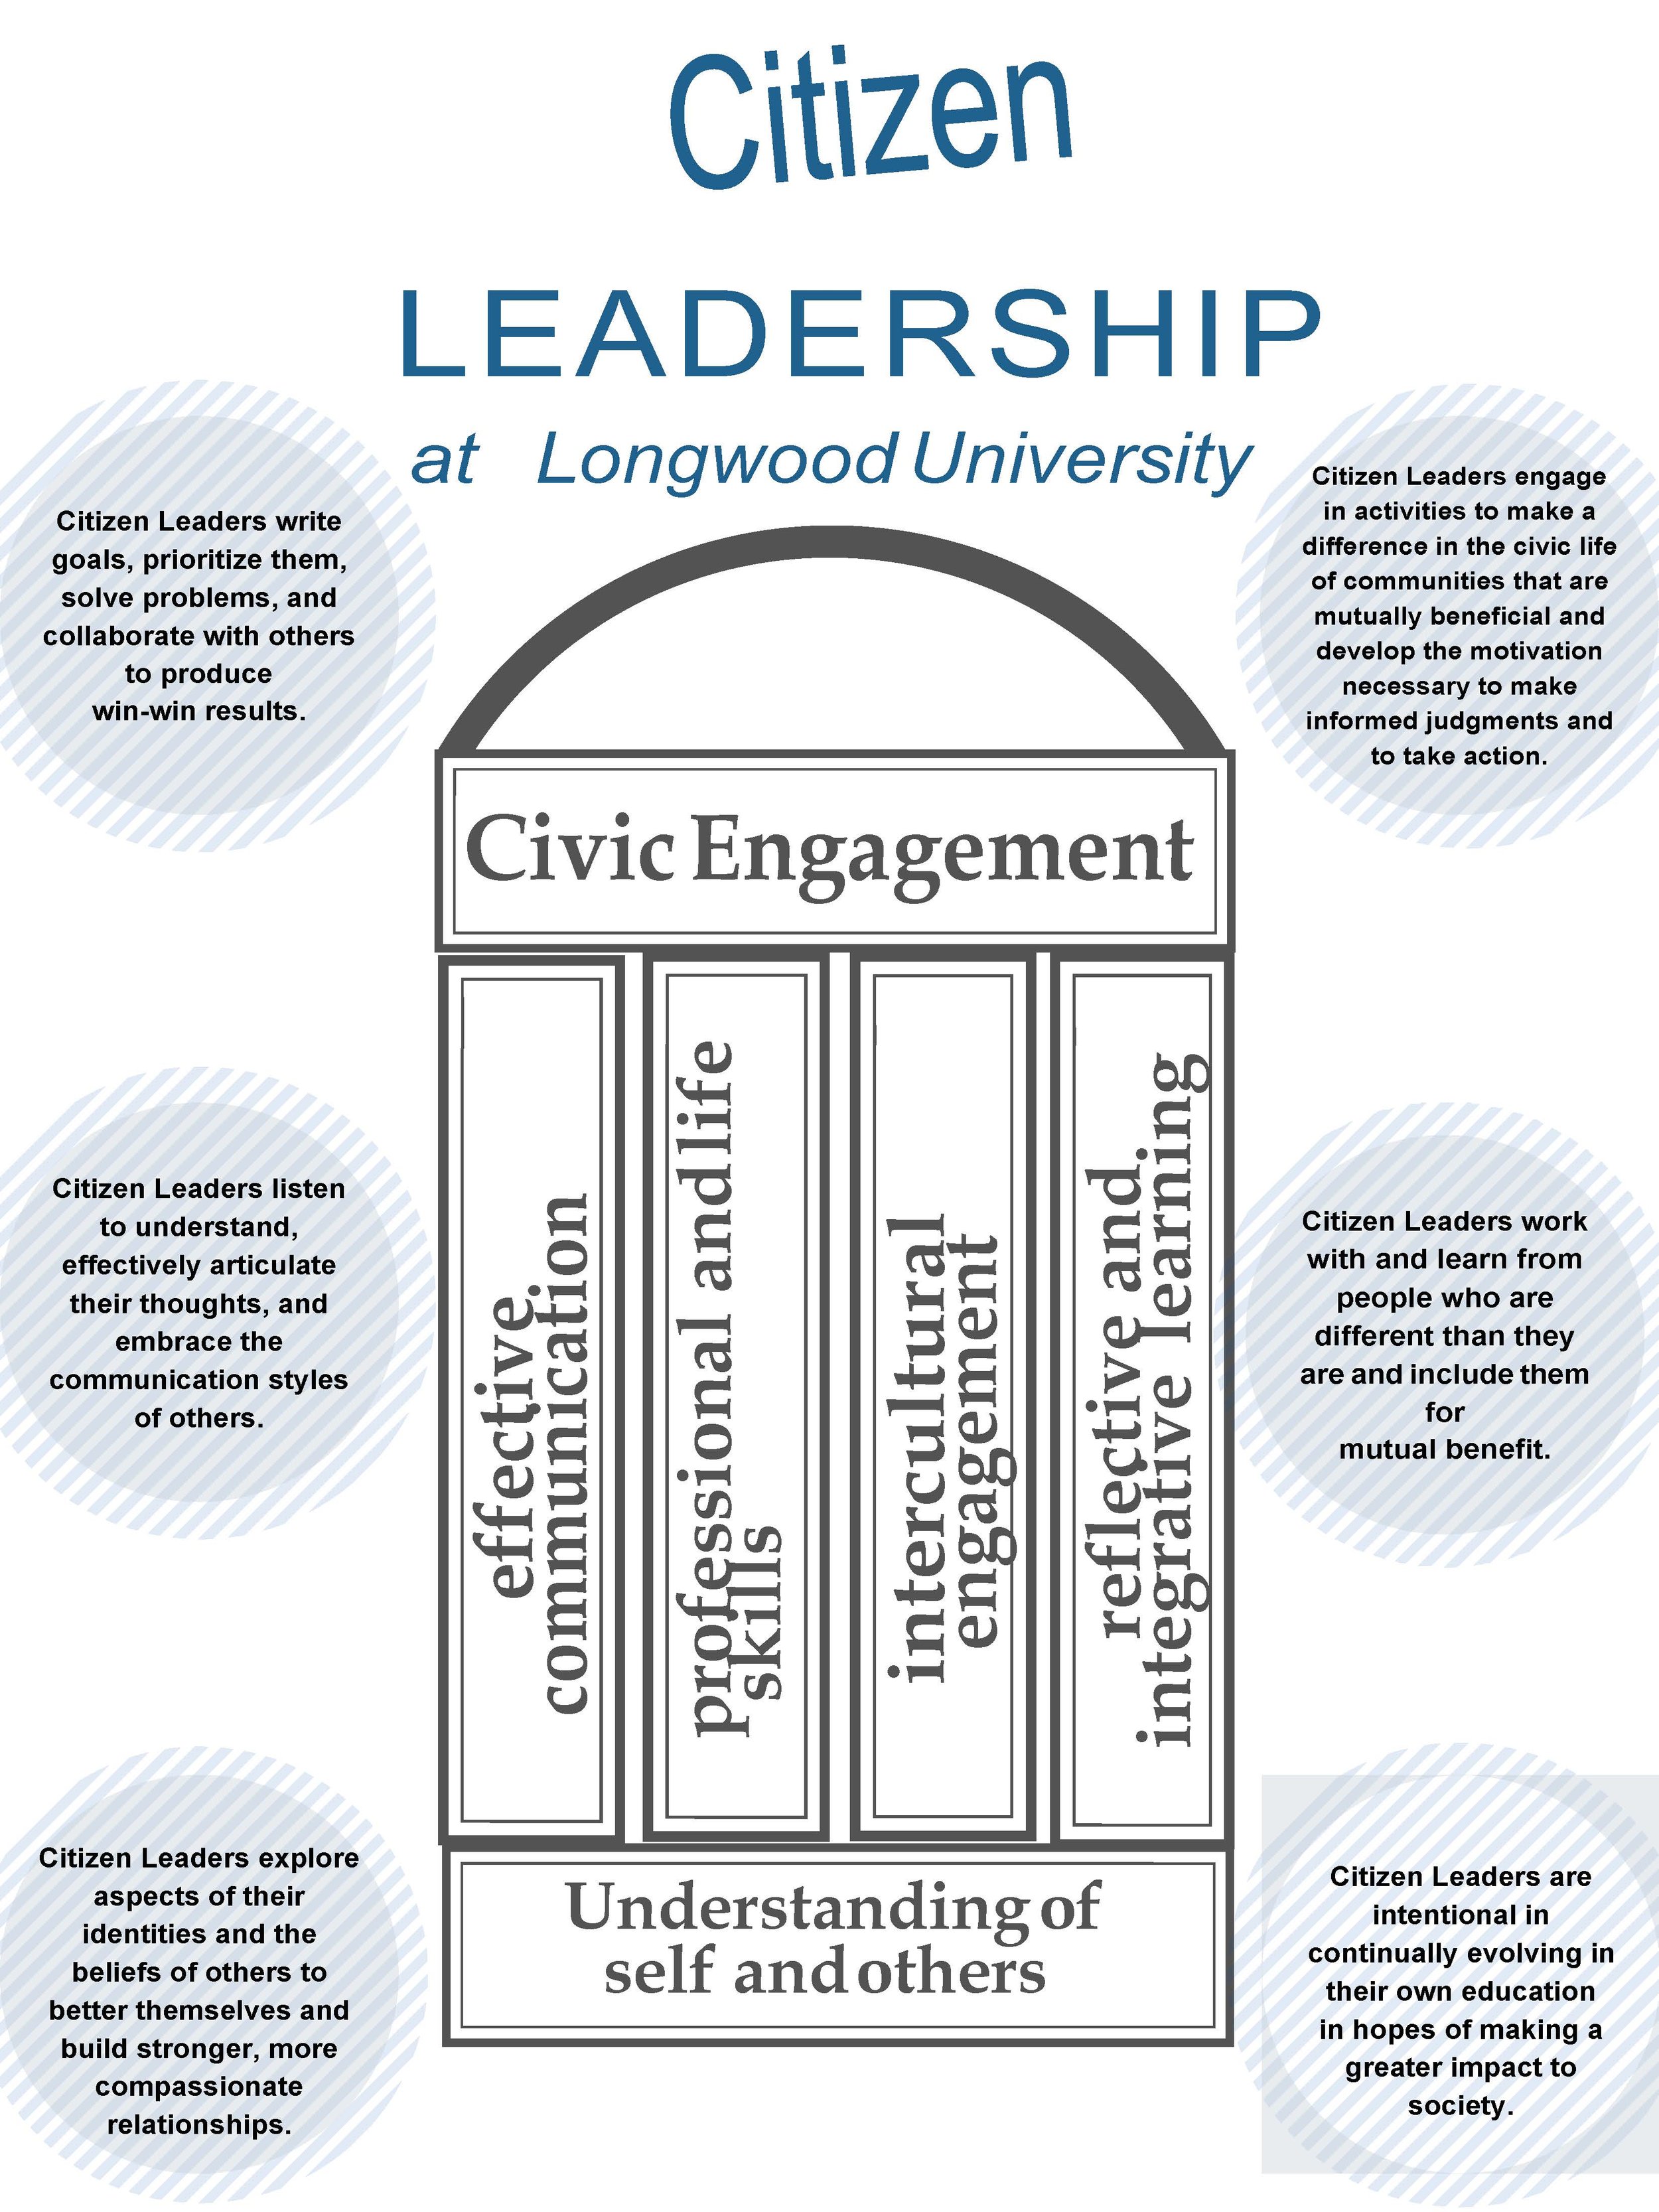 Citizen Leader Development Model poster updated 2022.jpg